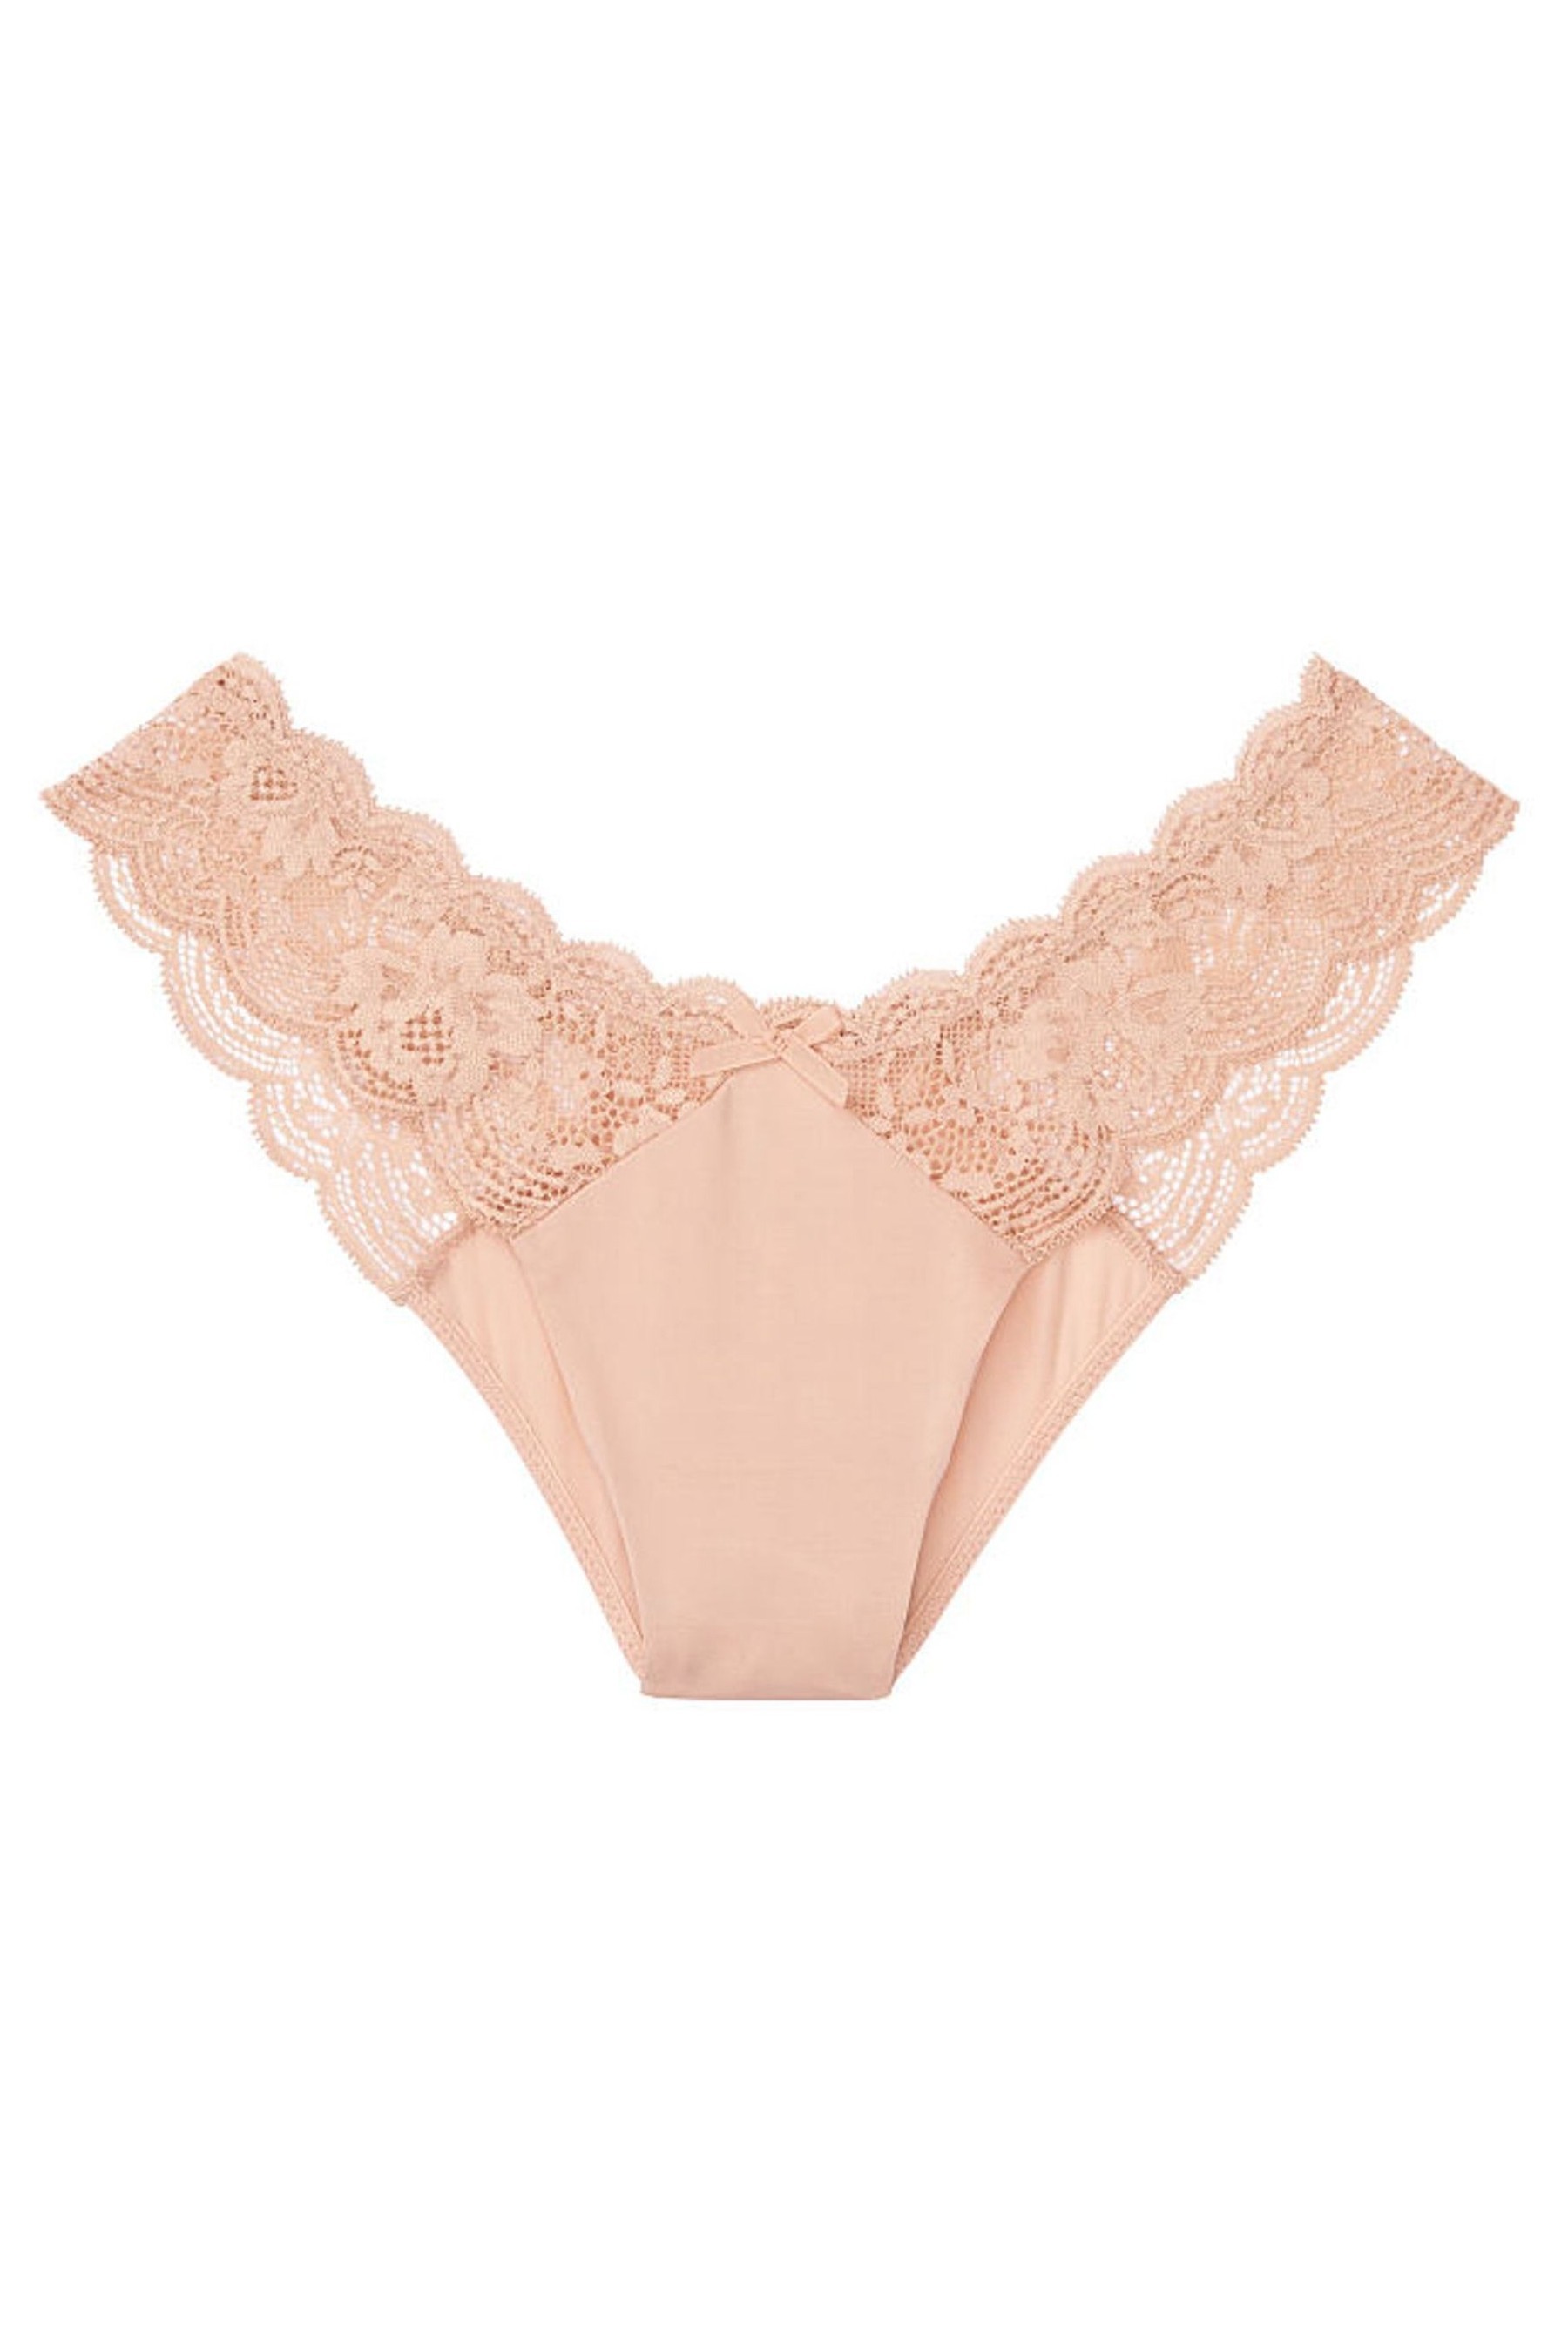 Buy Victoria S Secret Lace Brazilian Panty From The Victoria S Secret Uk Online Shop